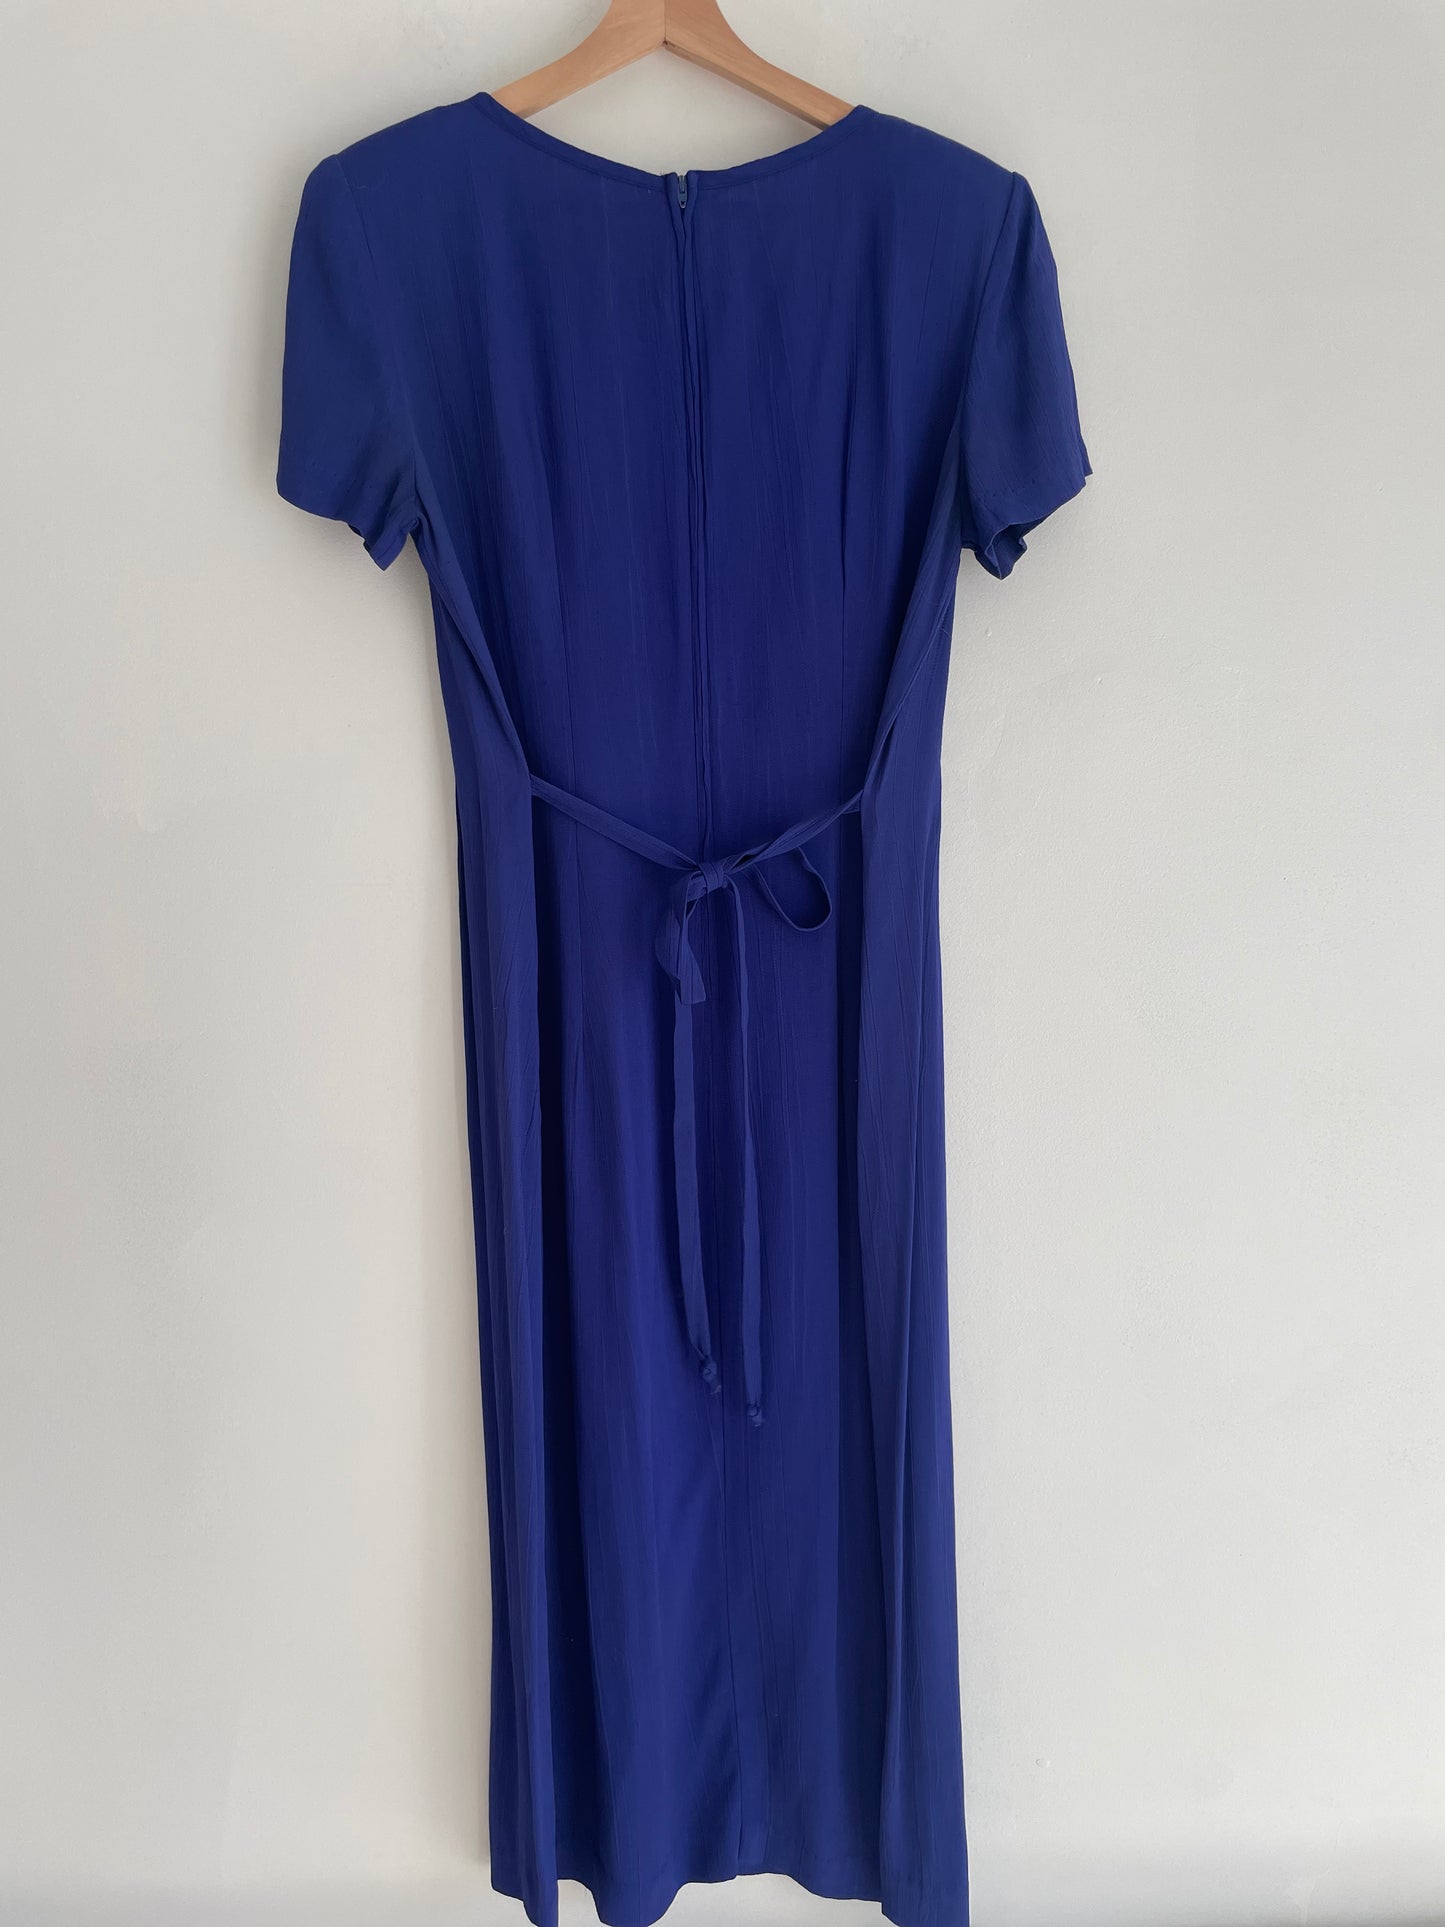 Blue Summer Dress | Medium